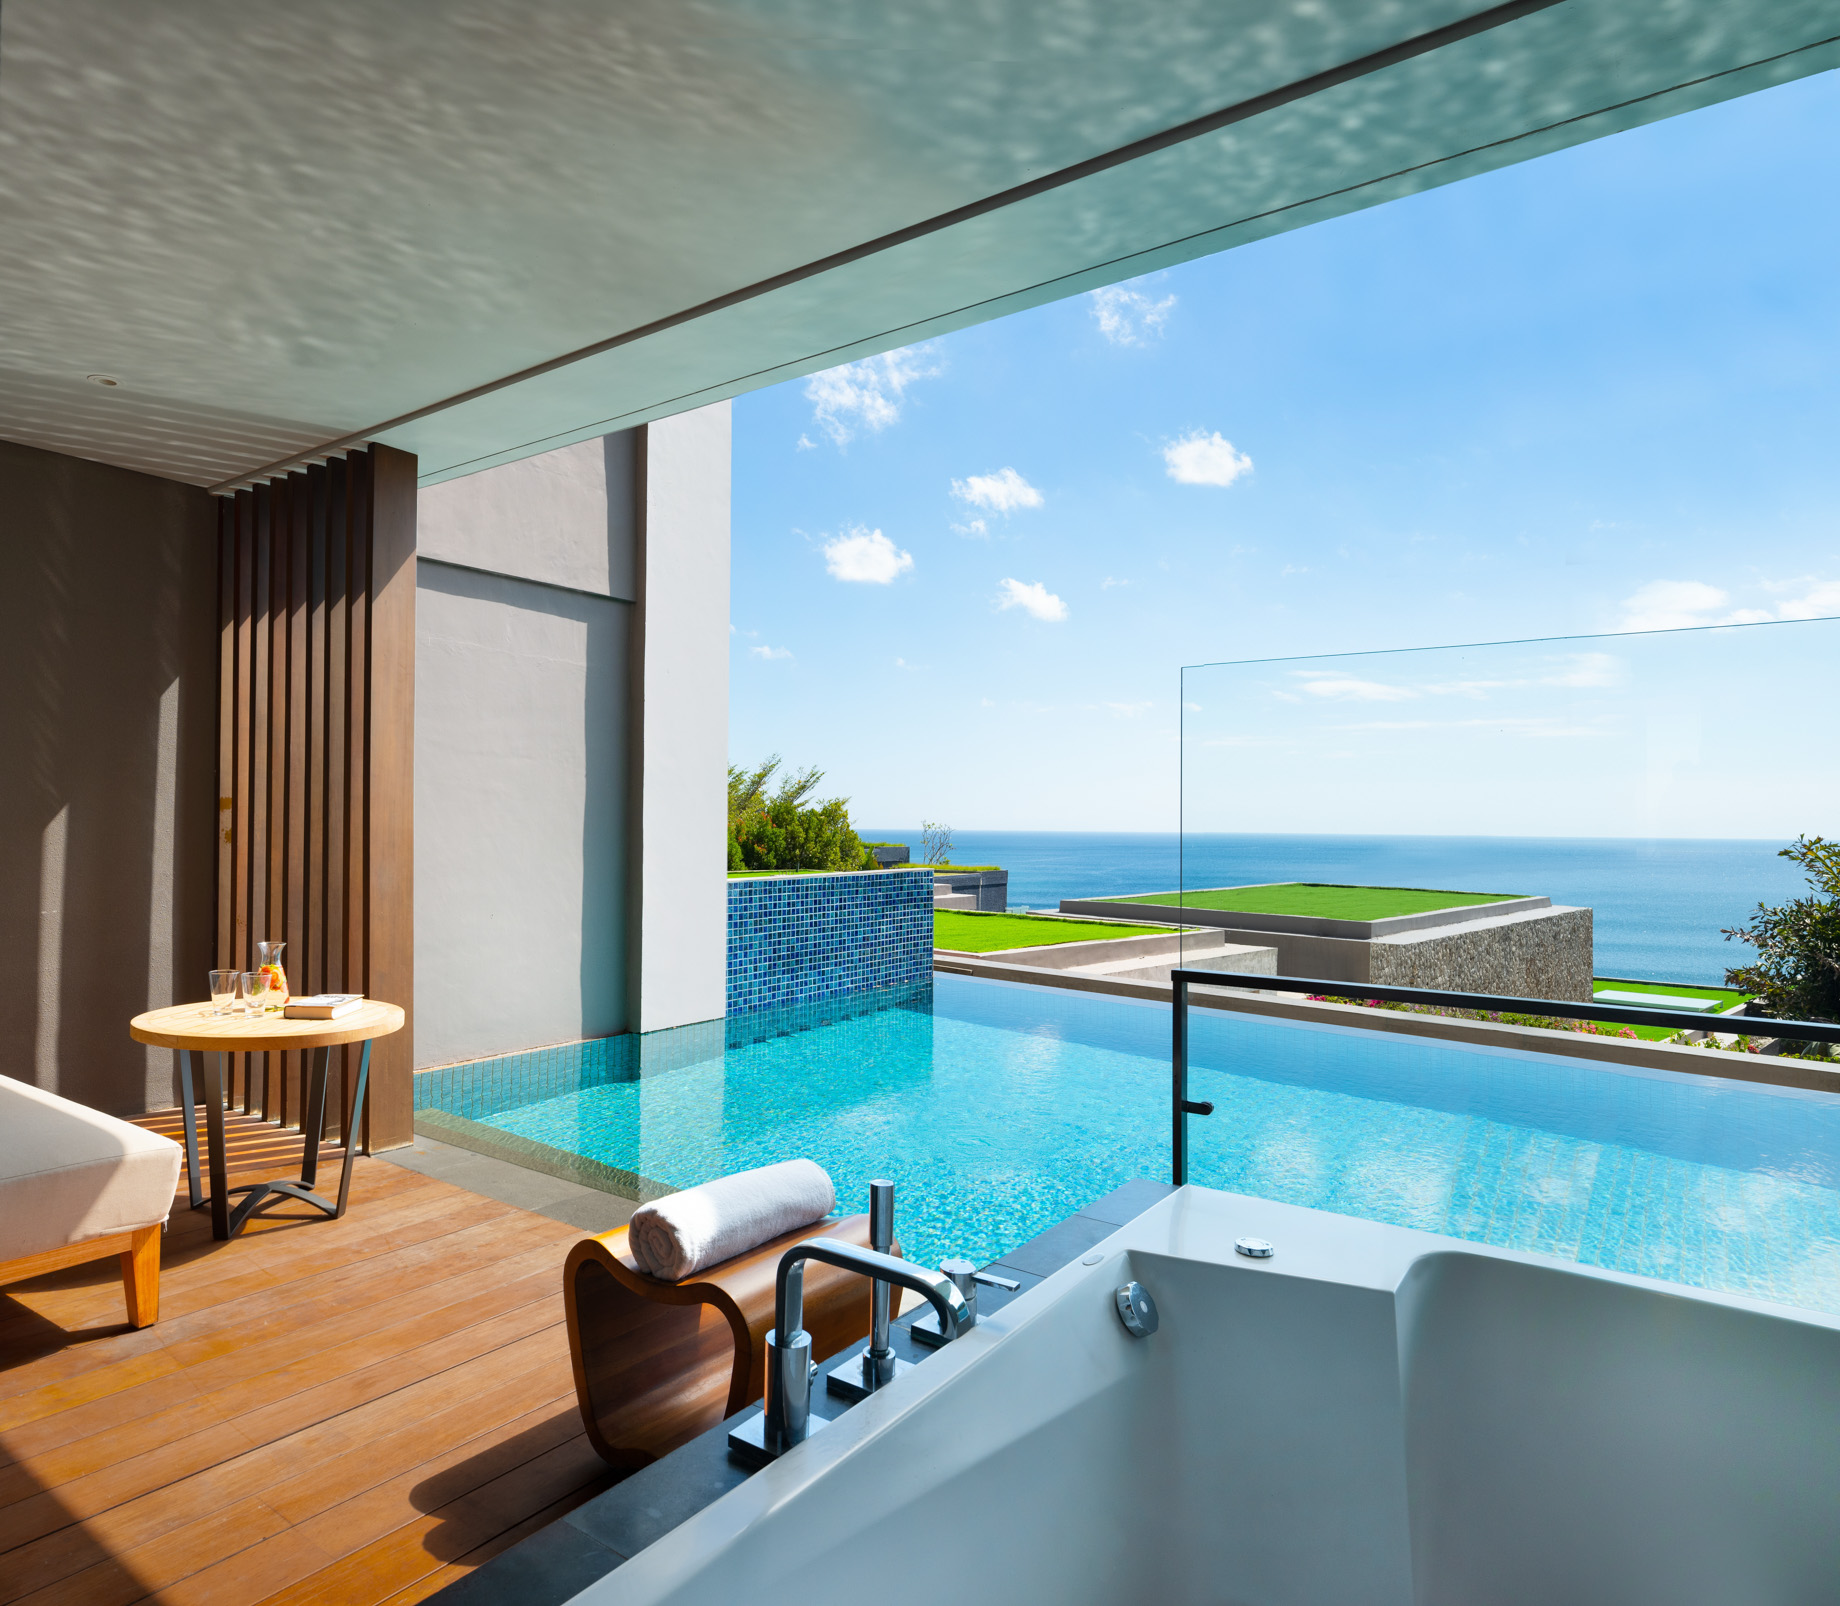 Anantara Uluwatu Bali Resort – Bali, Indonesia – Ocean View Pool Suite